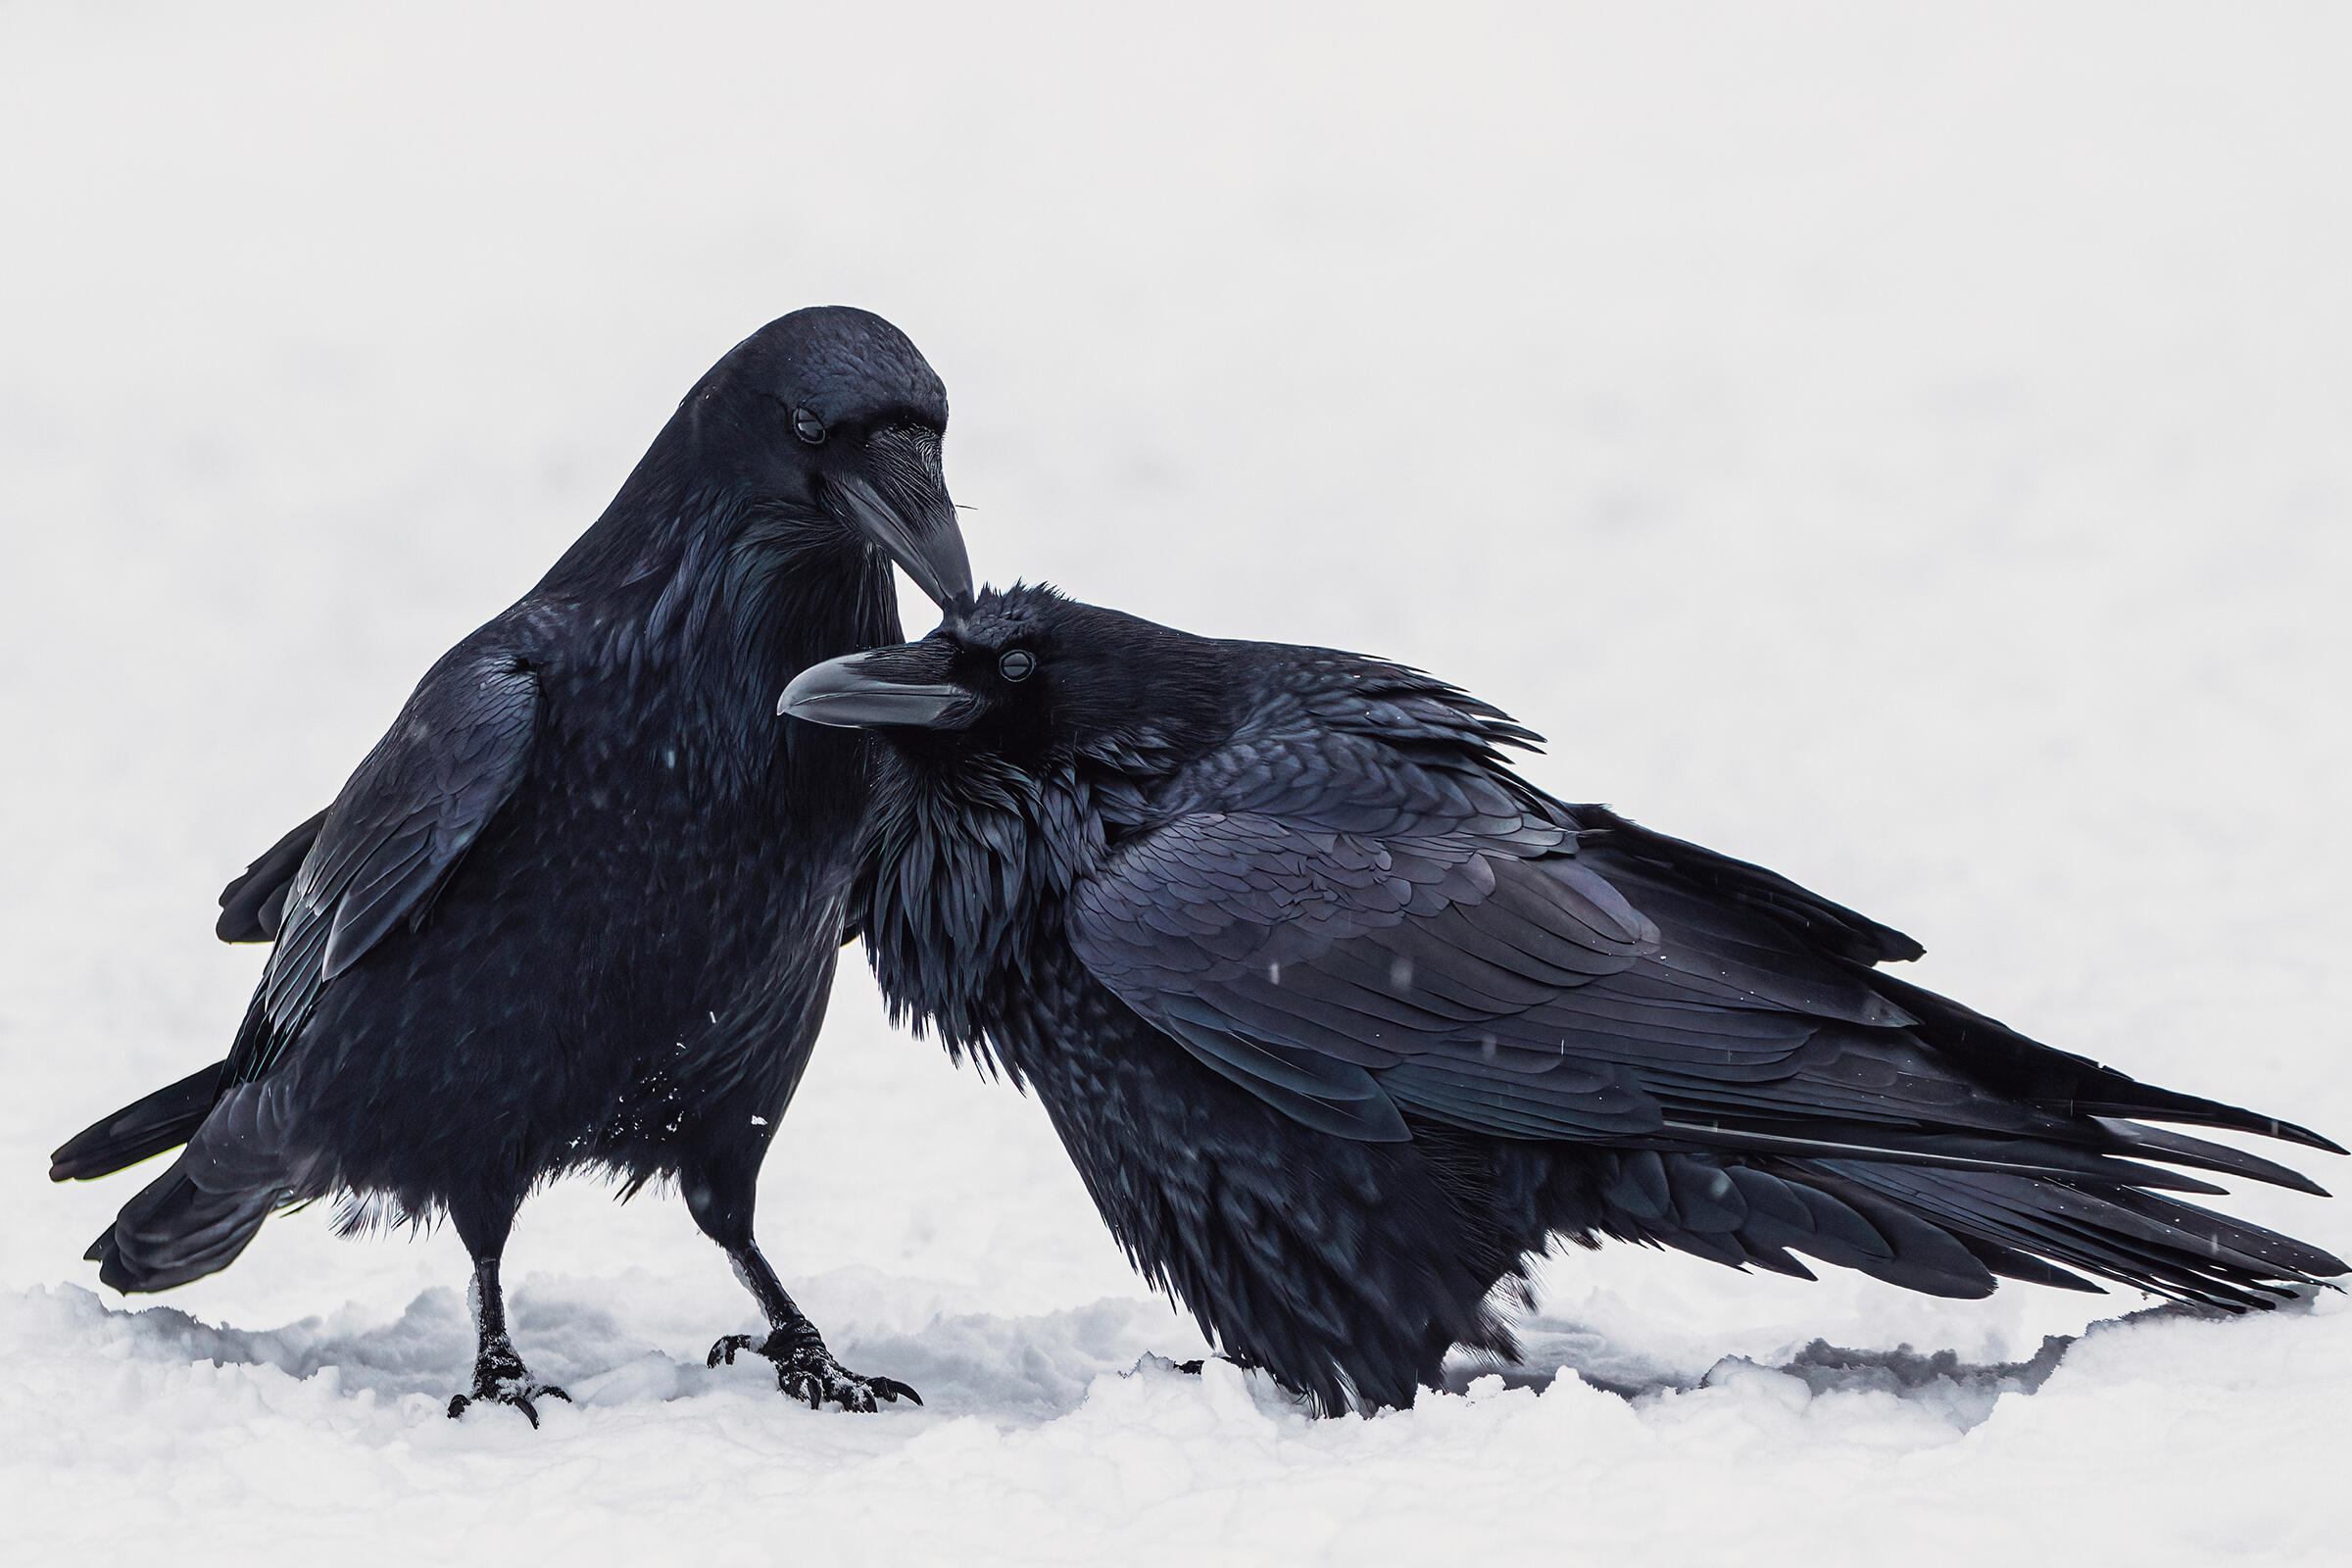 Ворон (лат. Corvus corax). Алгонкинский провинциальный парк, Онтарио, Канада. Взрослые вороны образуют длительные моногамные пары, и пары остаются вместе круглый год, кажется, что они общаются друг с другом, используя широкий спектр голосов и неречевых сигналов. Фото: Ankur Khurana/Audubon Photography Awards